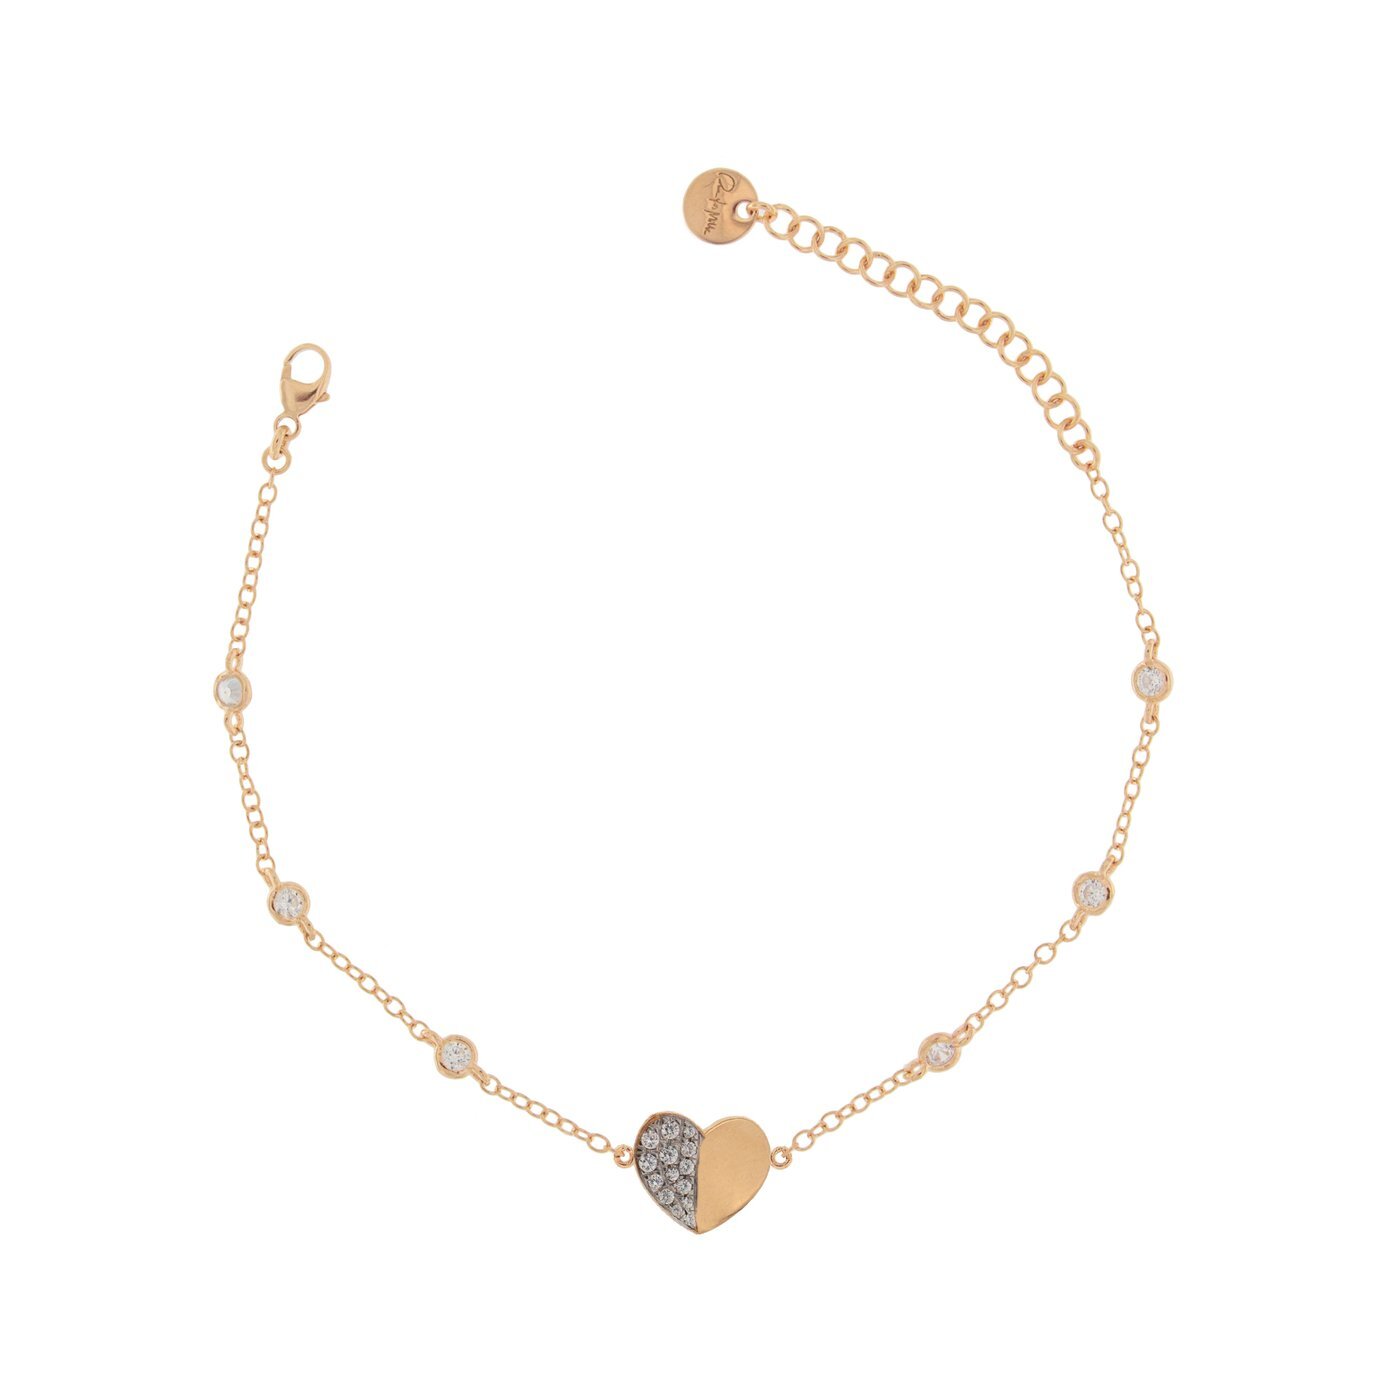 Rue Des Mille bracciale da donna in argento 925 placcato in oro rosa 18 kt con soggetto "cuore" e zirconi bianchi - Codice bracciale: BRZ-007 CUO